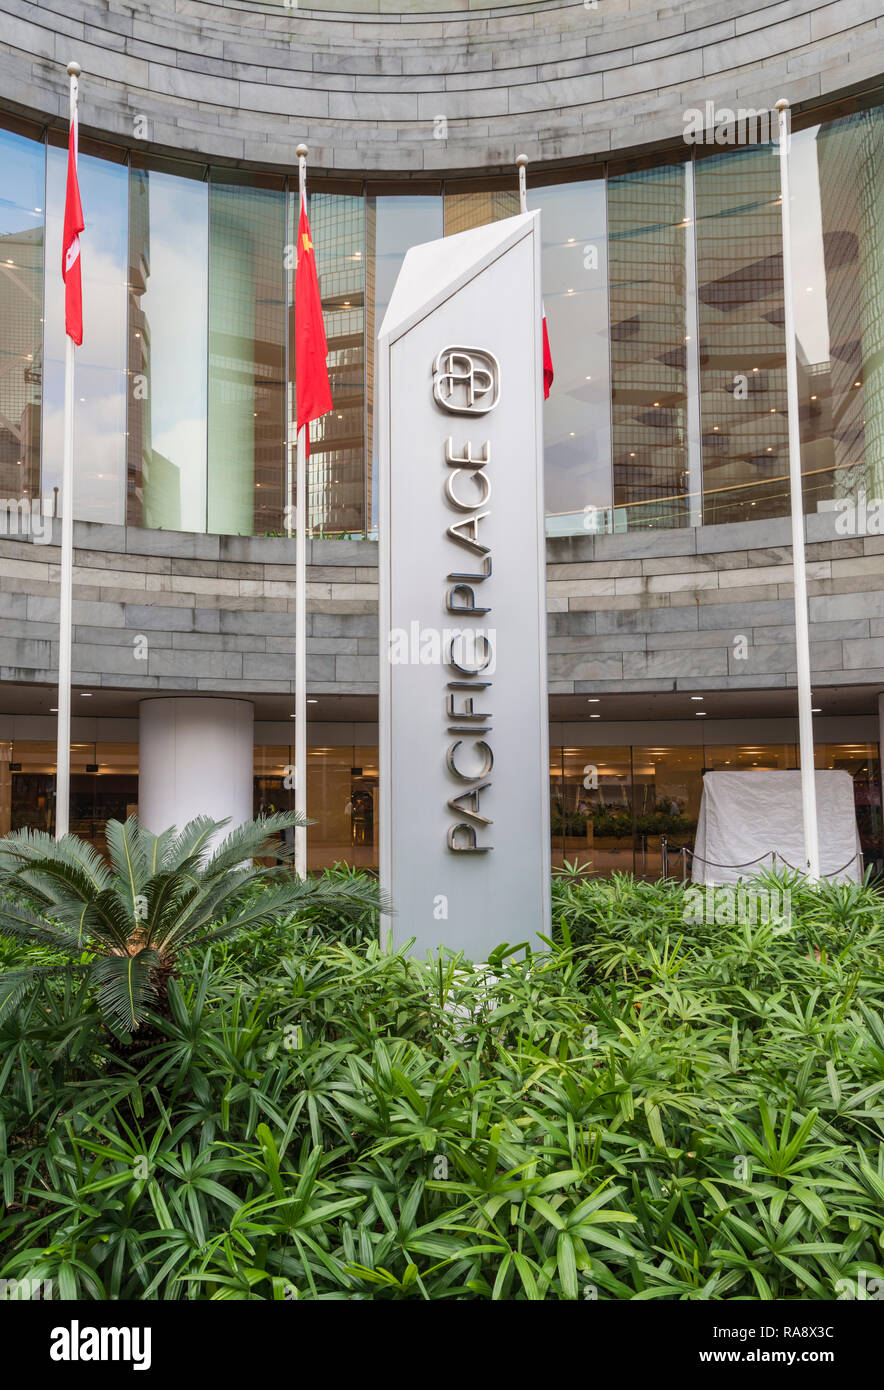 Signer et entrée au centre commercial Pacific Place, l'Amirauté, Hong Kong Banque D'Images